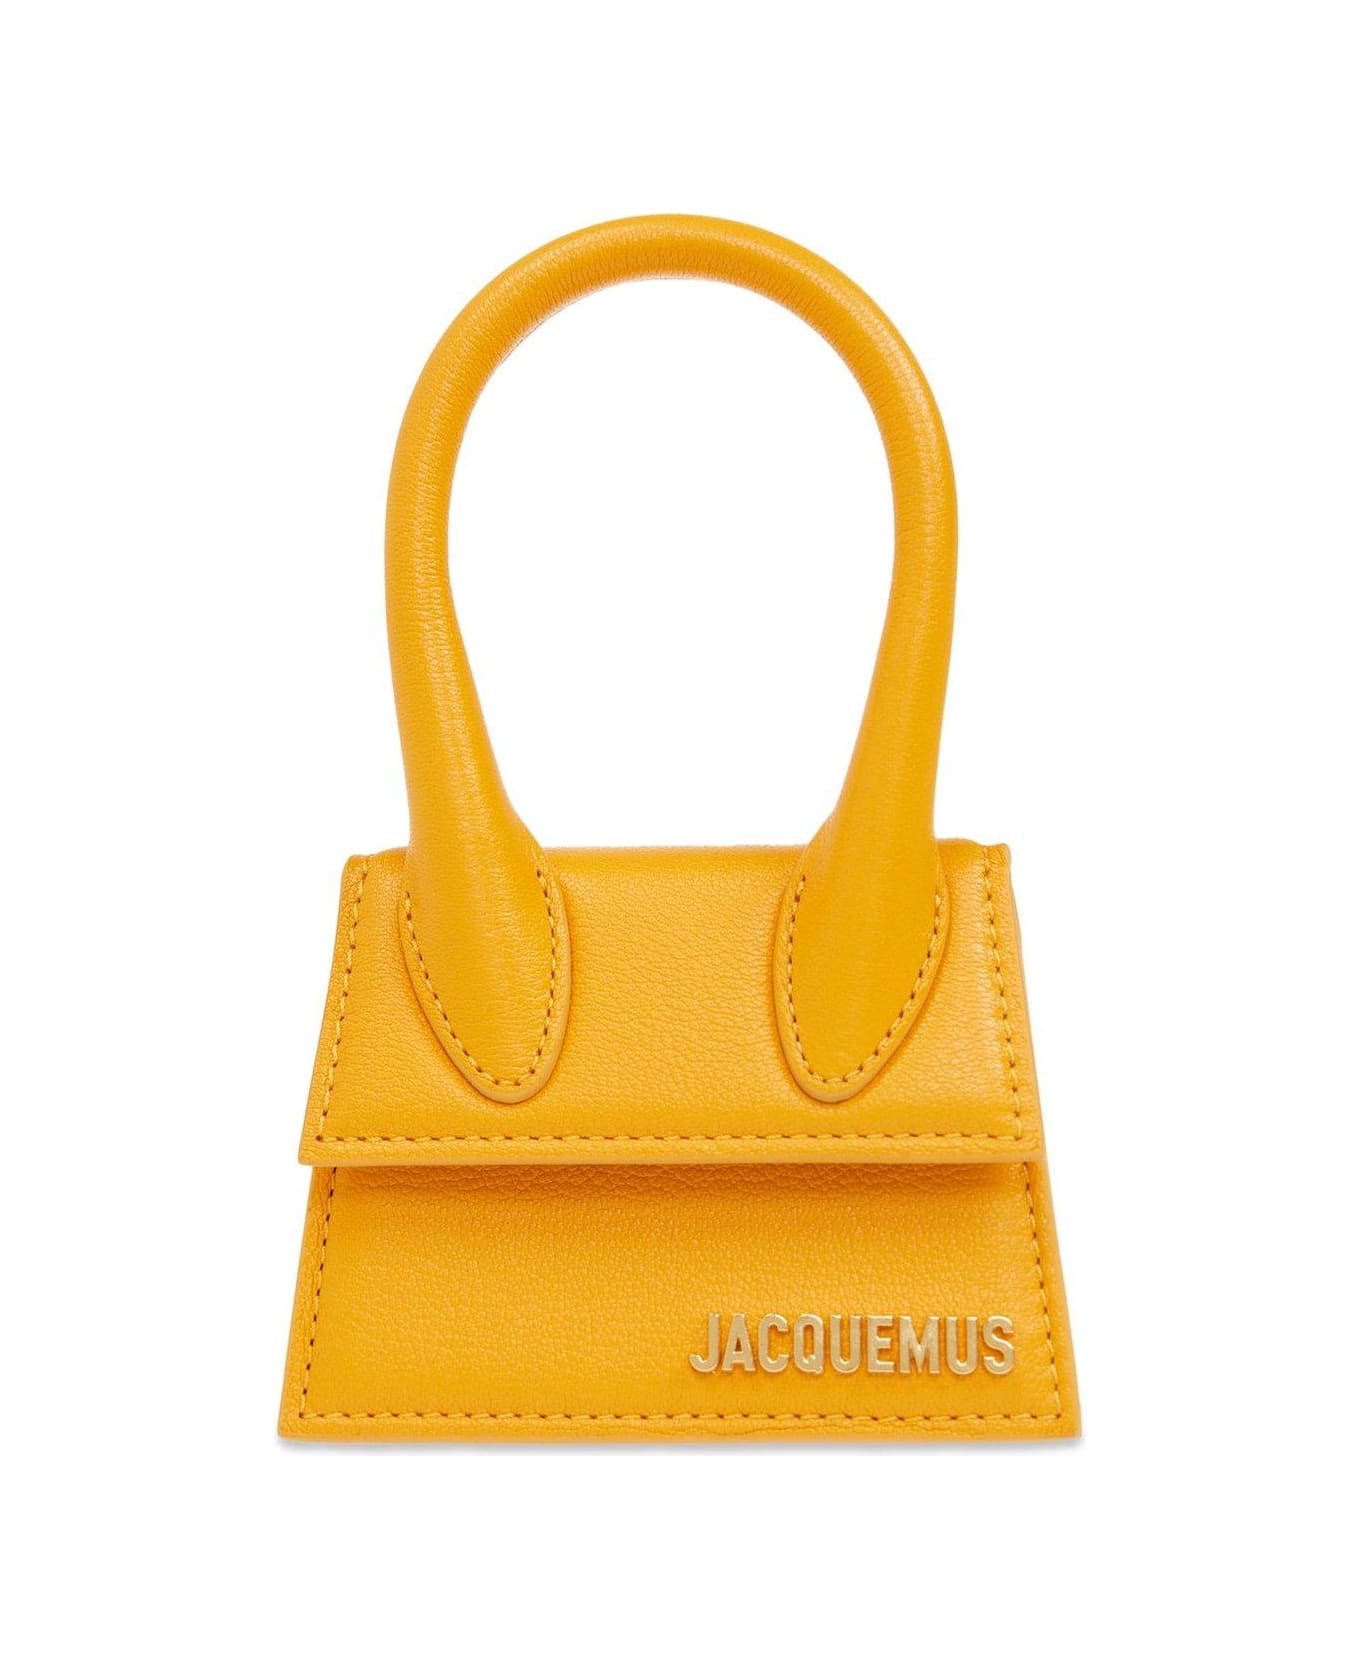 Jacquemus Le Chiquito Signature Handbag - ORANGE トートバッグ